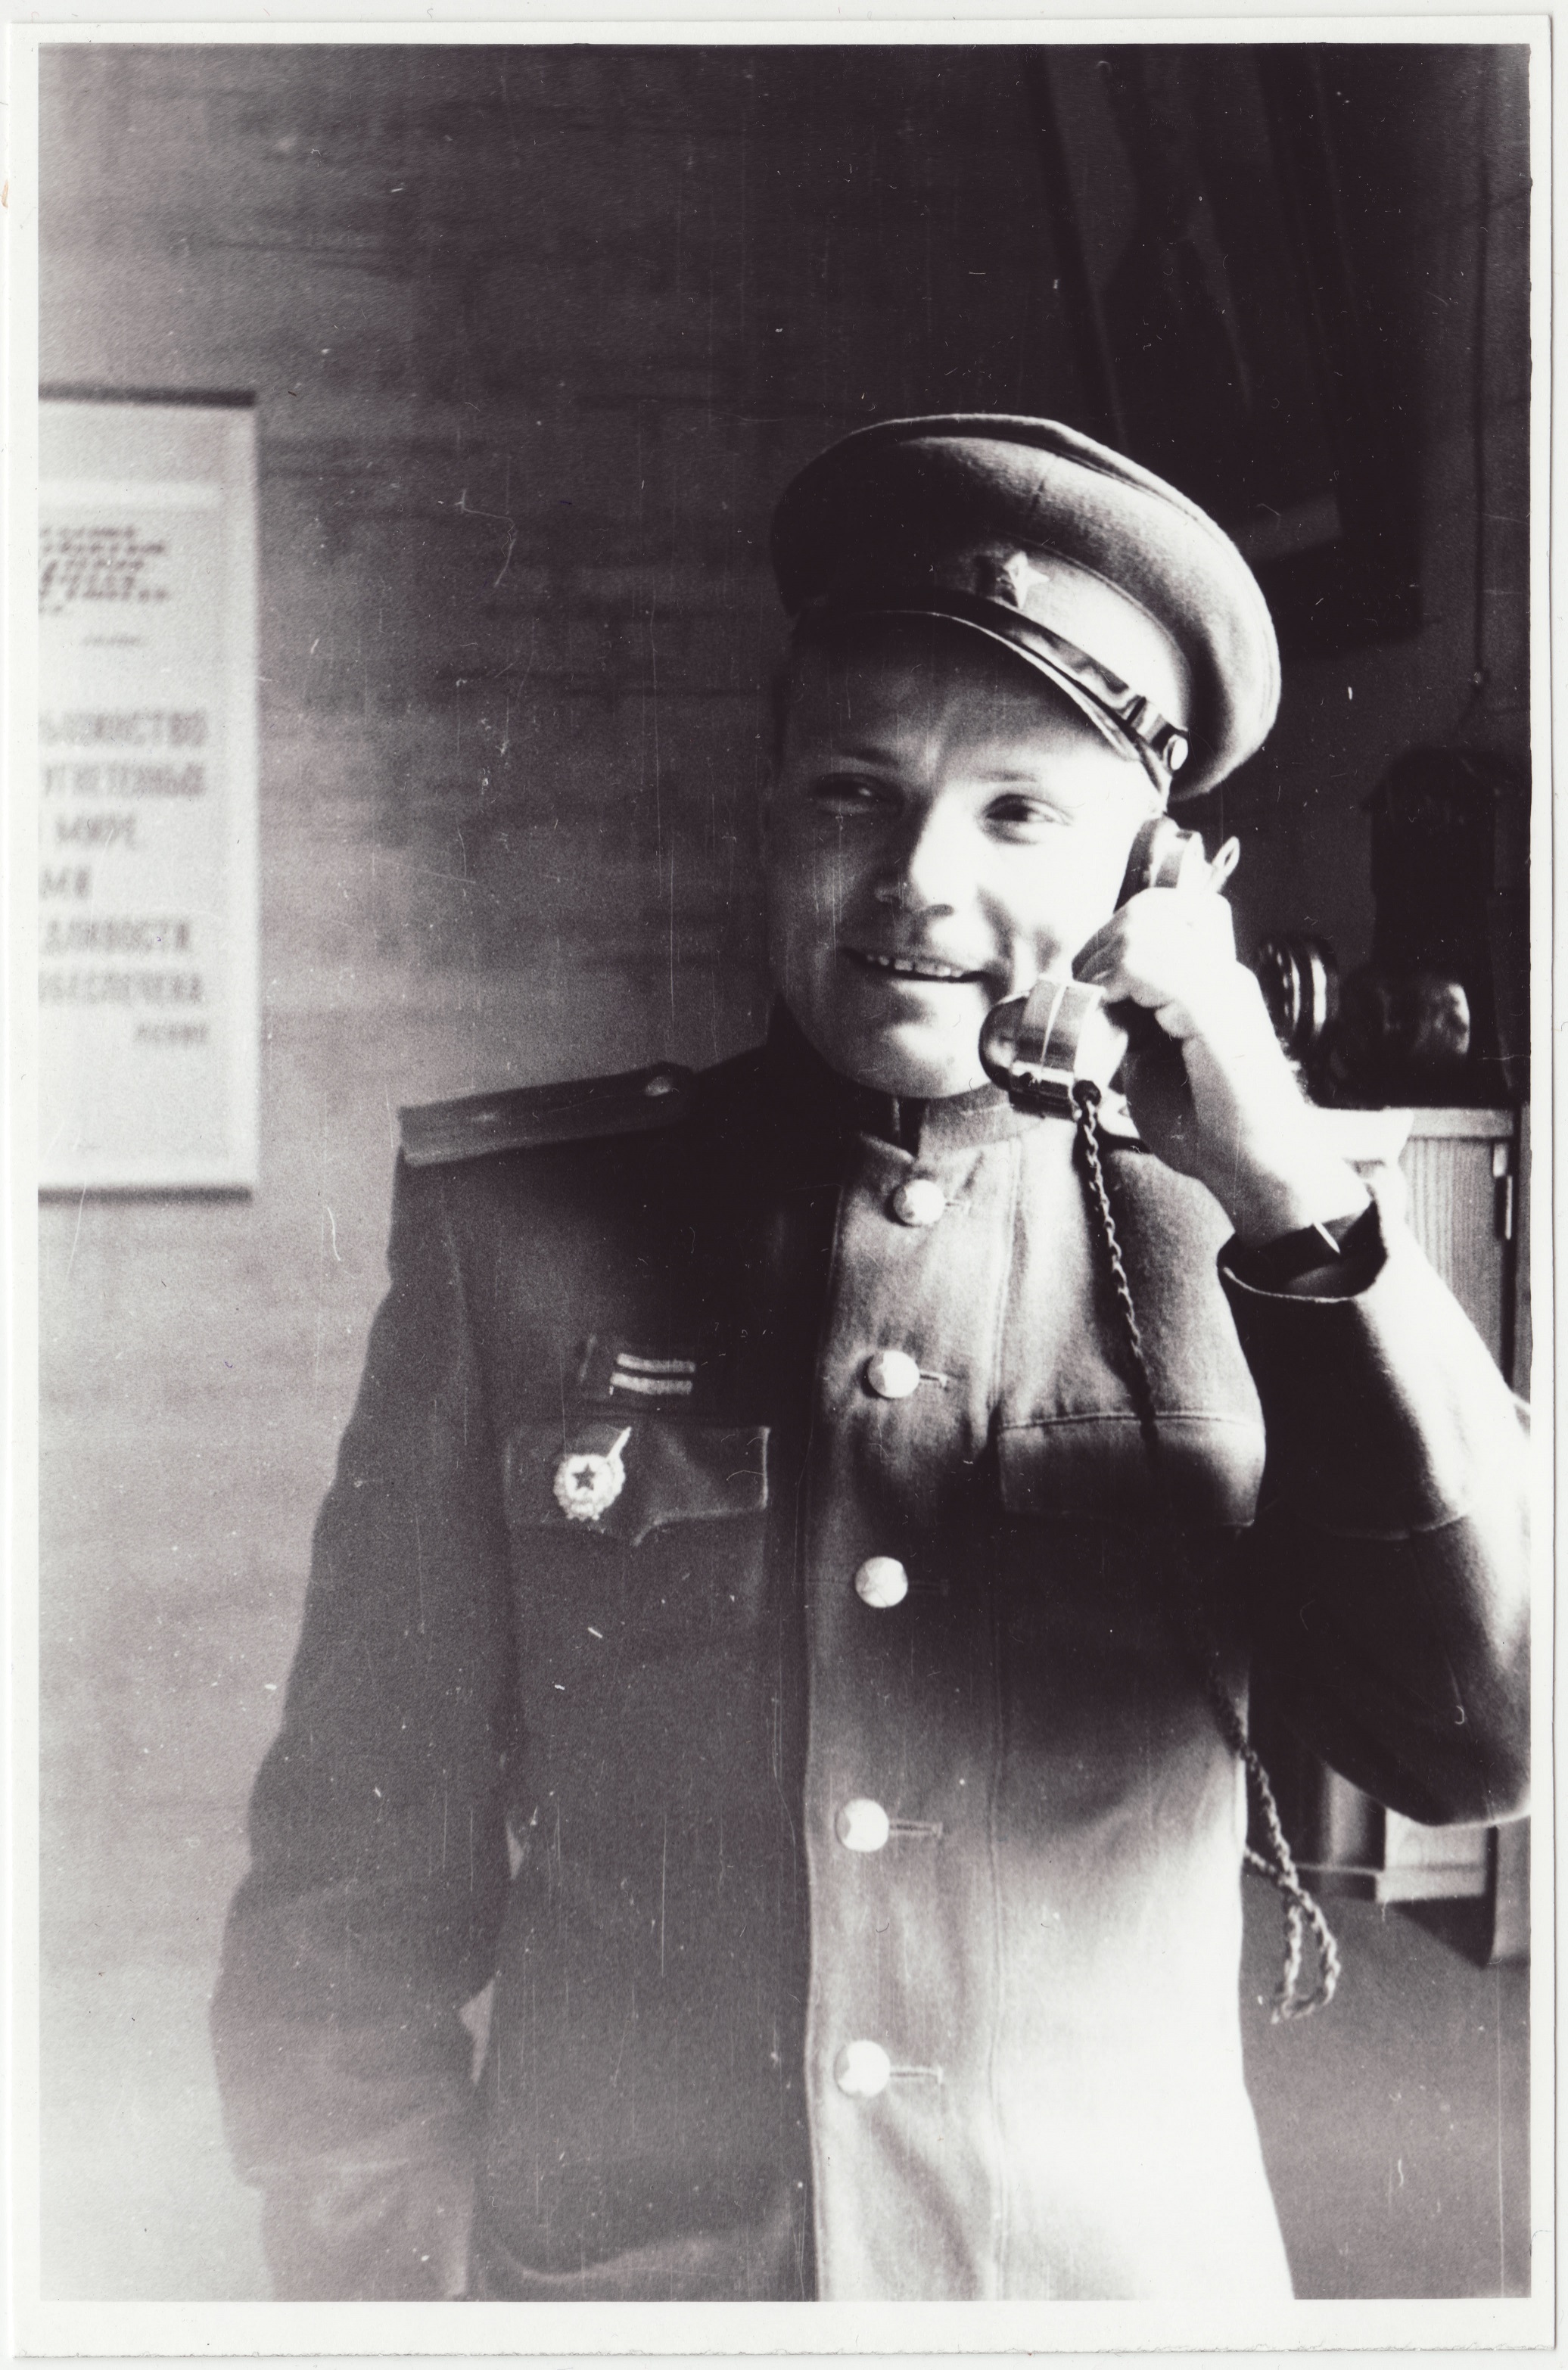 III ÜSTK vahtkonna ülem A.-V. Keel telefoniga rääkimas, 1952.a.